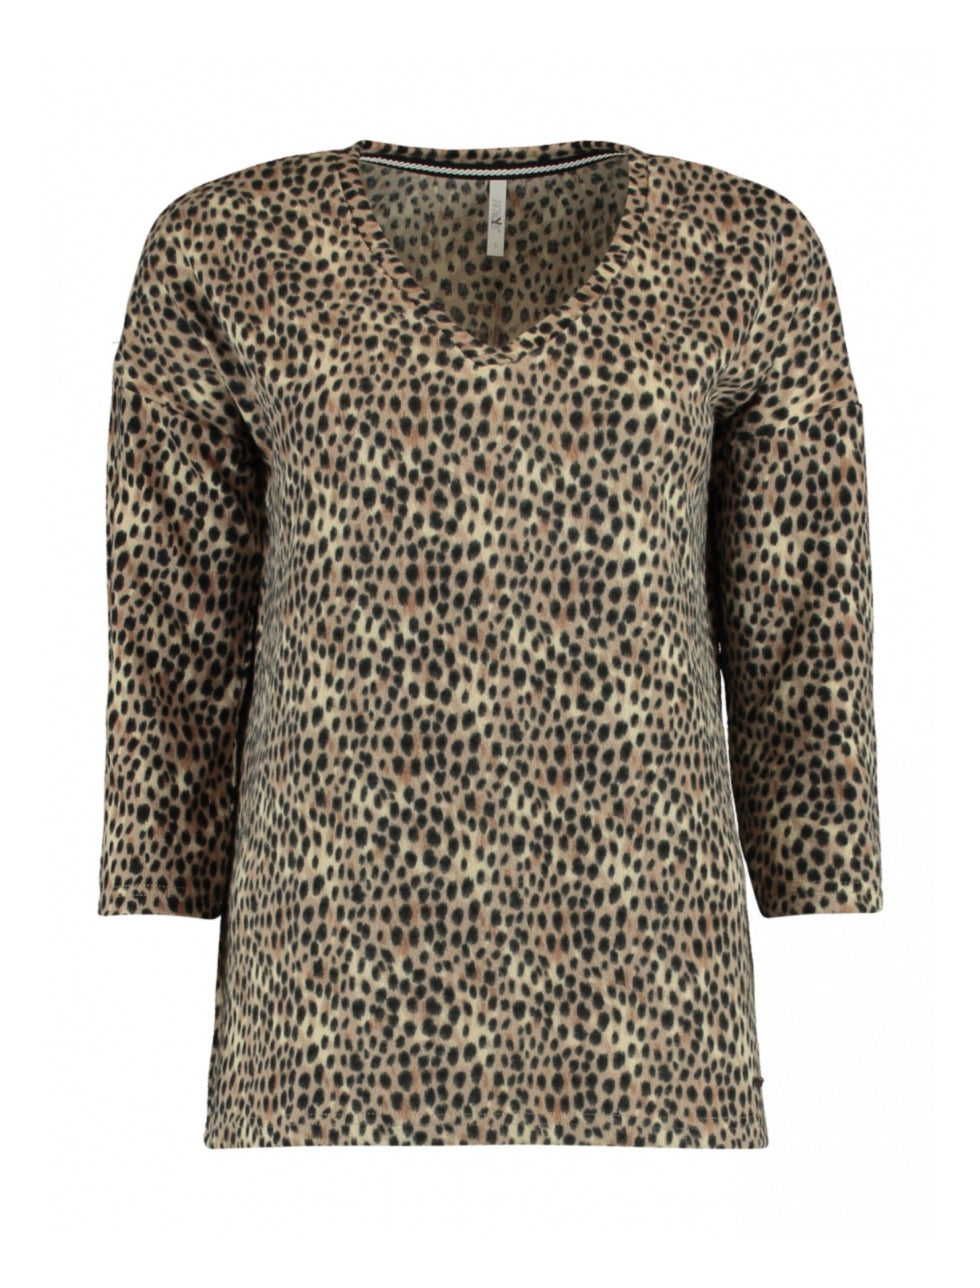 Malia Beige Leopard Print Knit Top